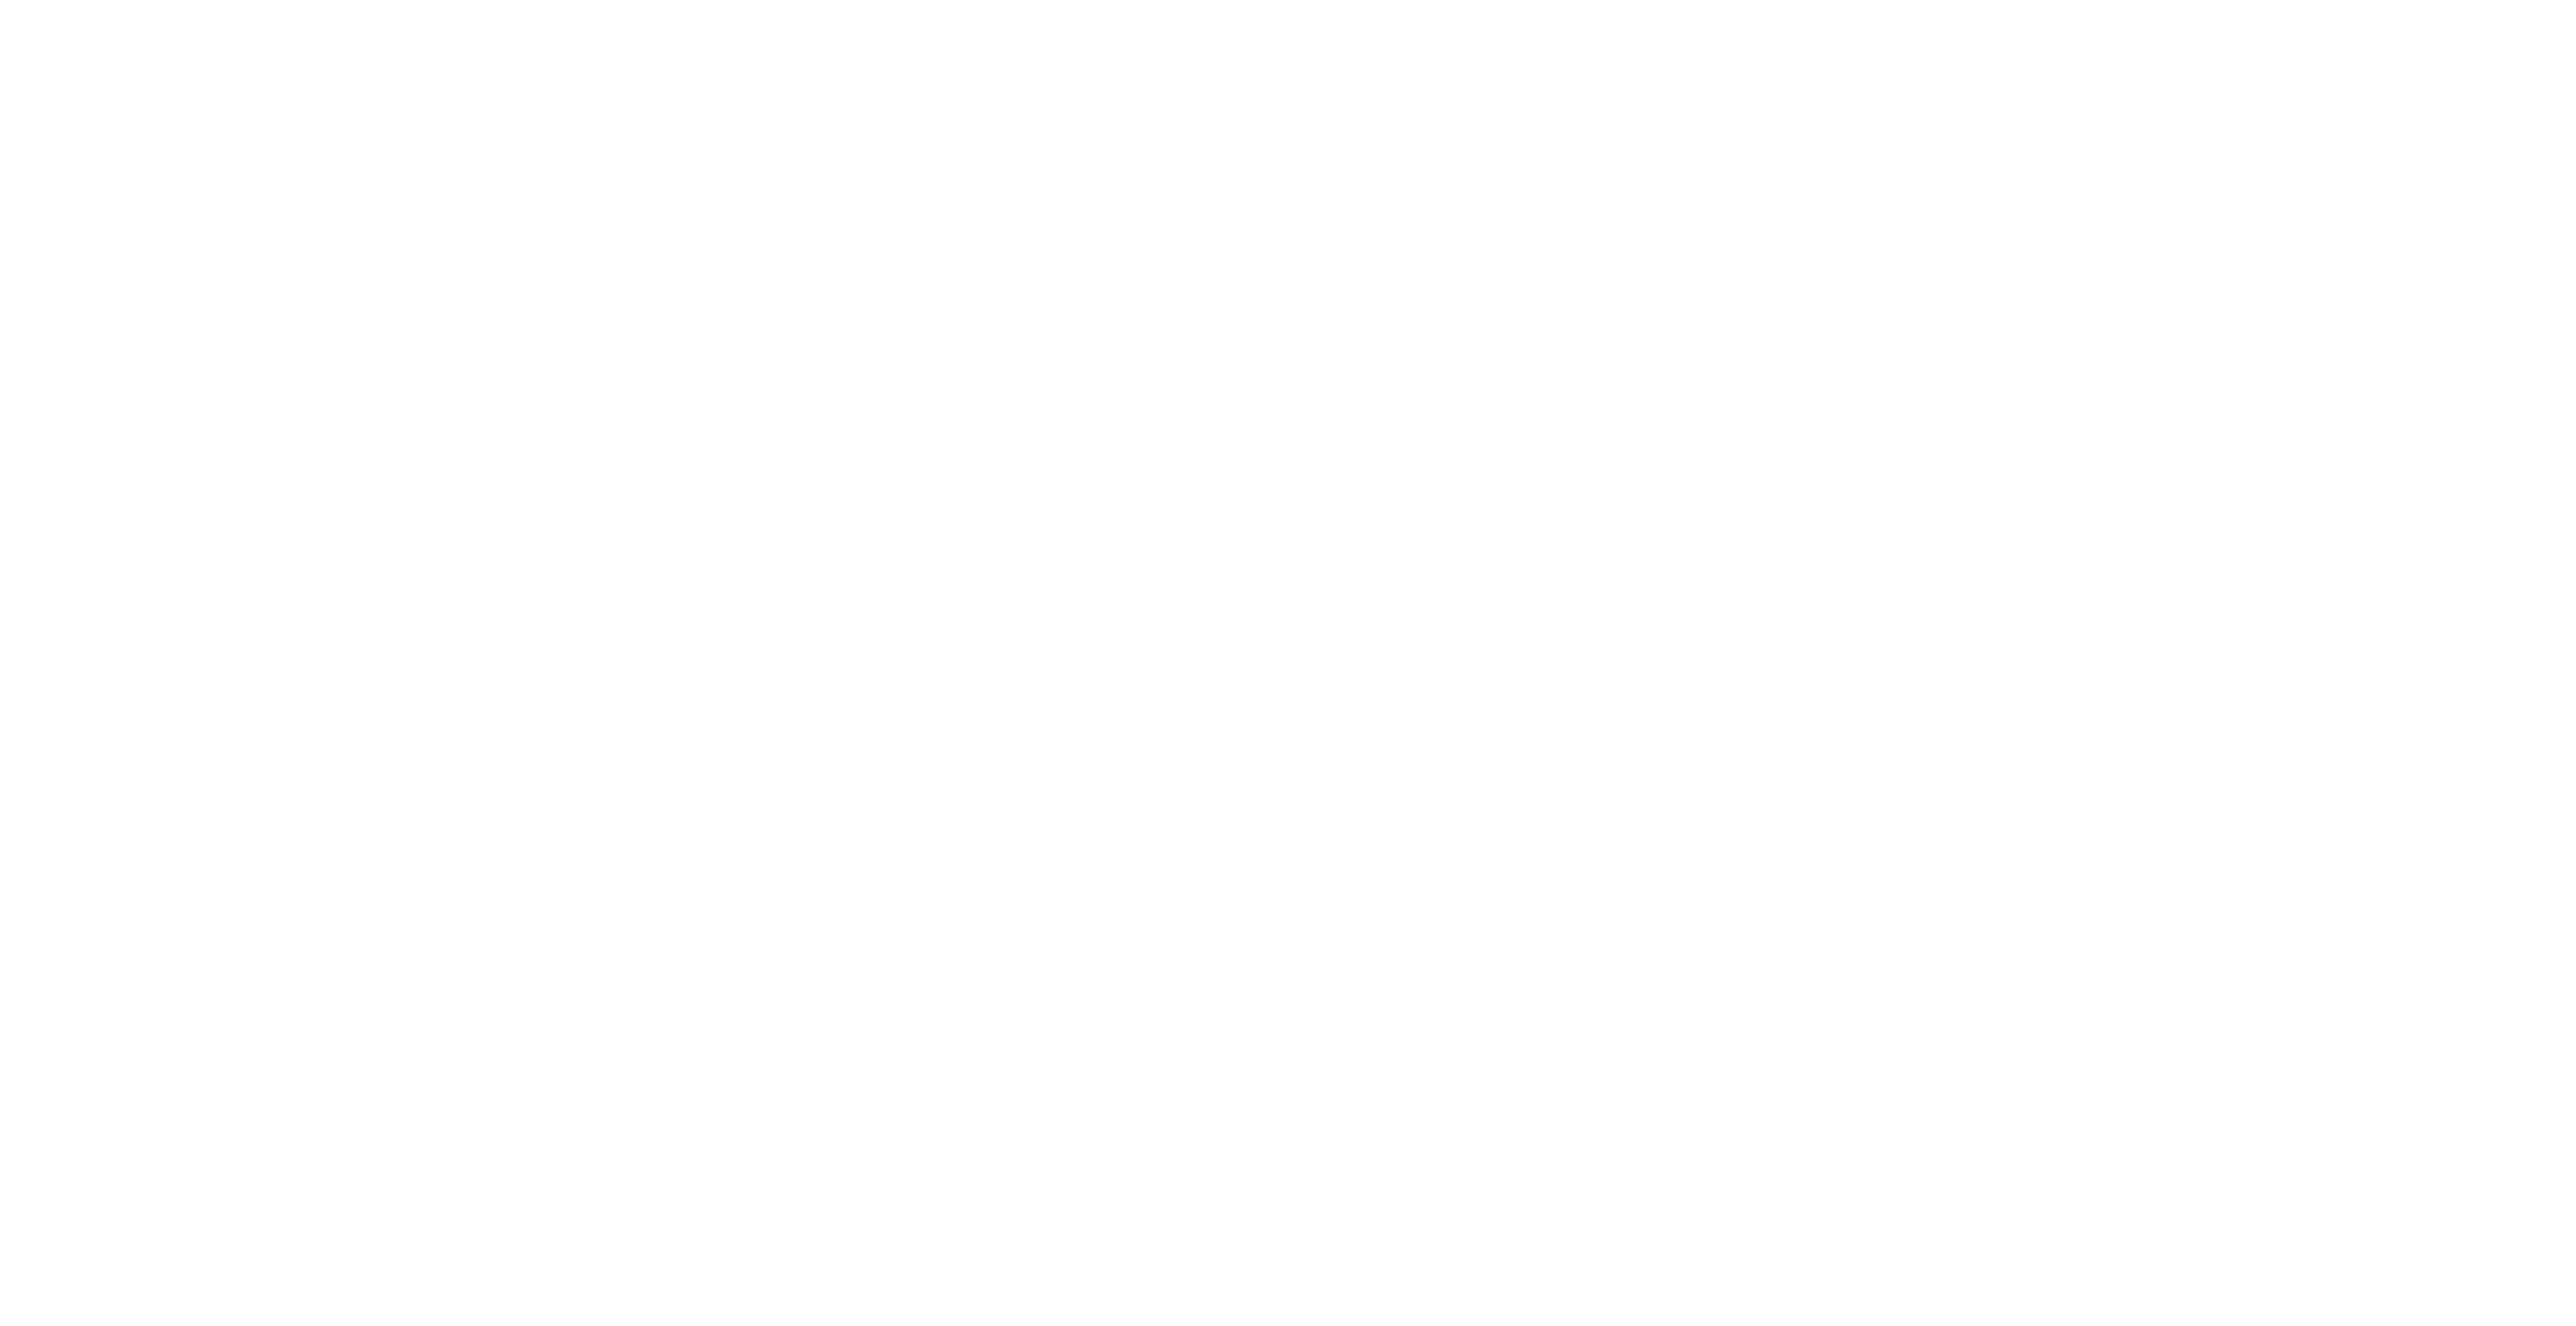 Gentlemen of Amsterdam